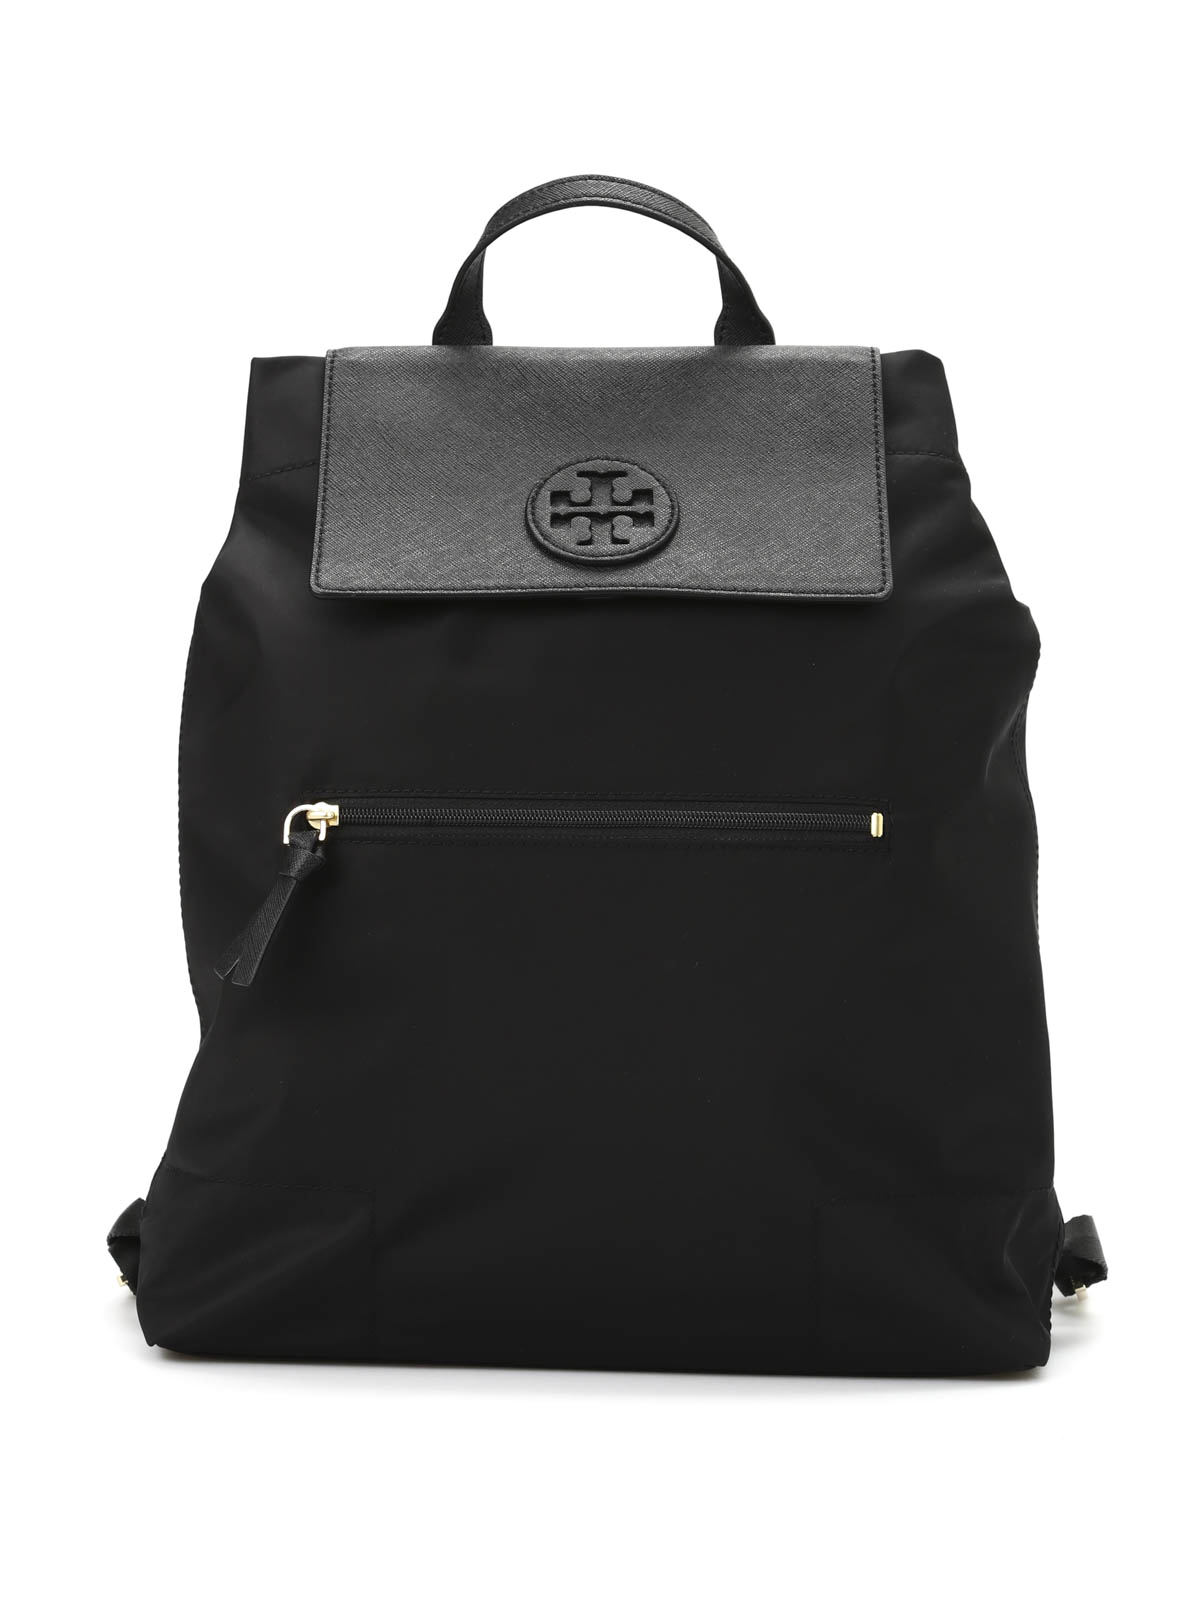 Backpacks Tory Burch - Ella packable backpack - 28994001 